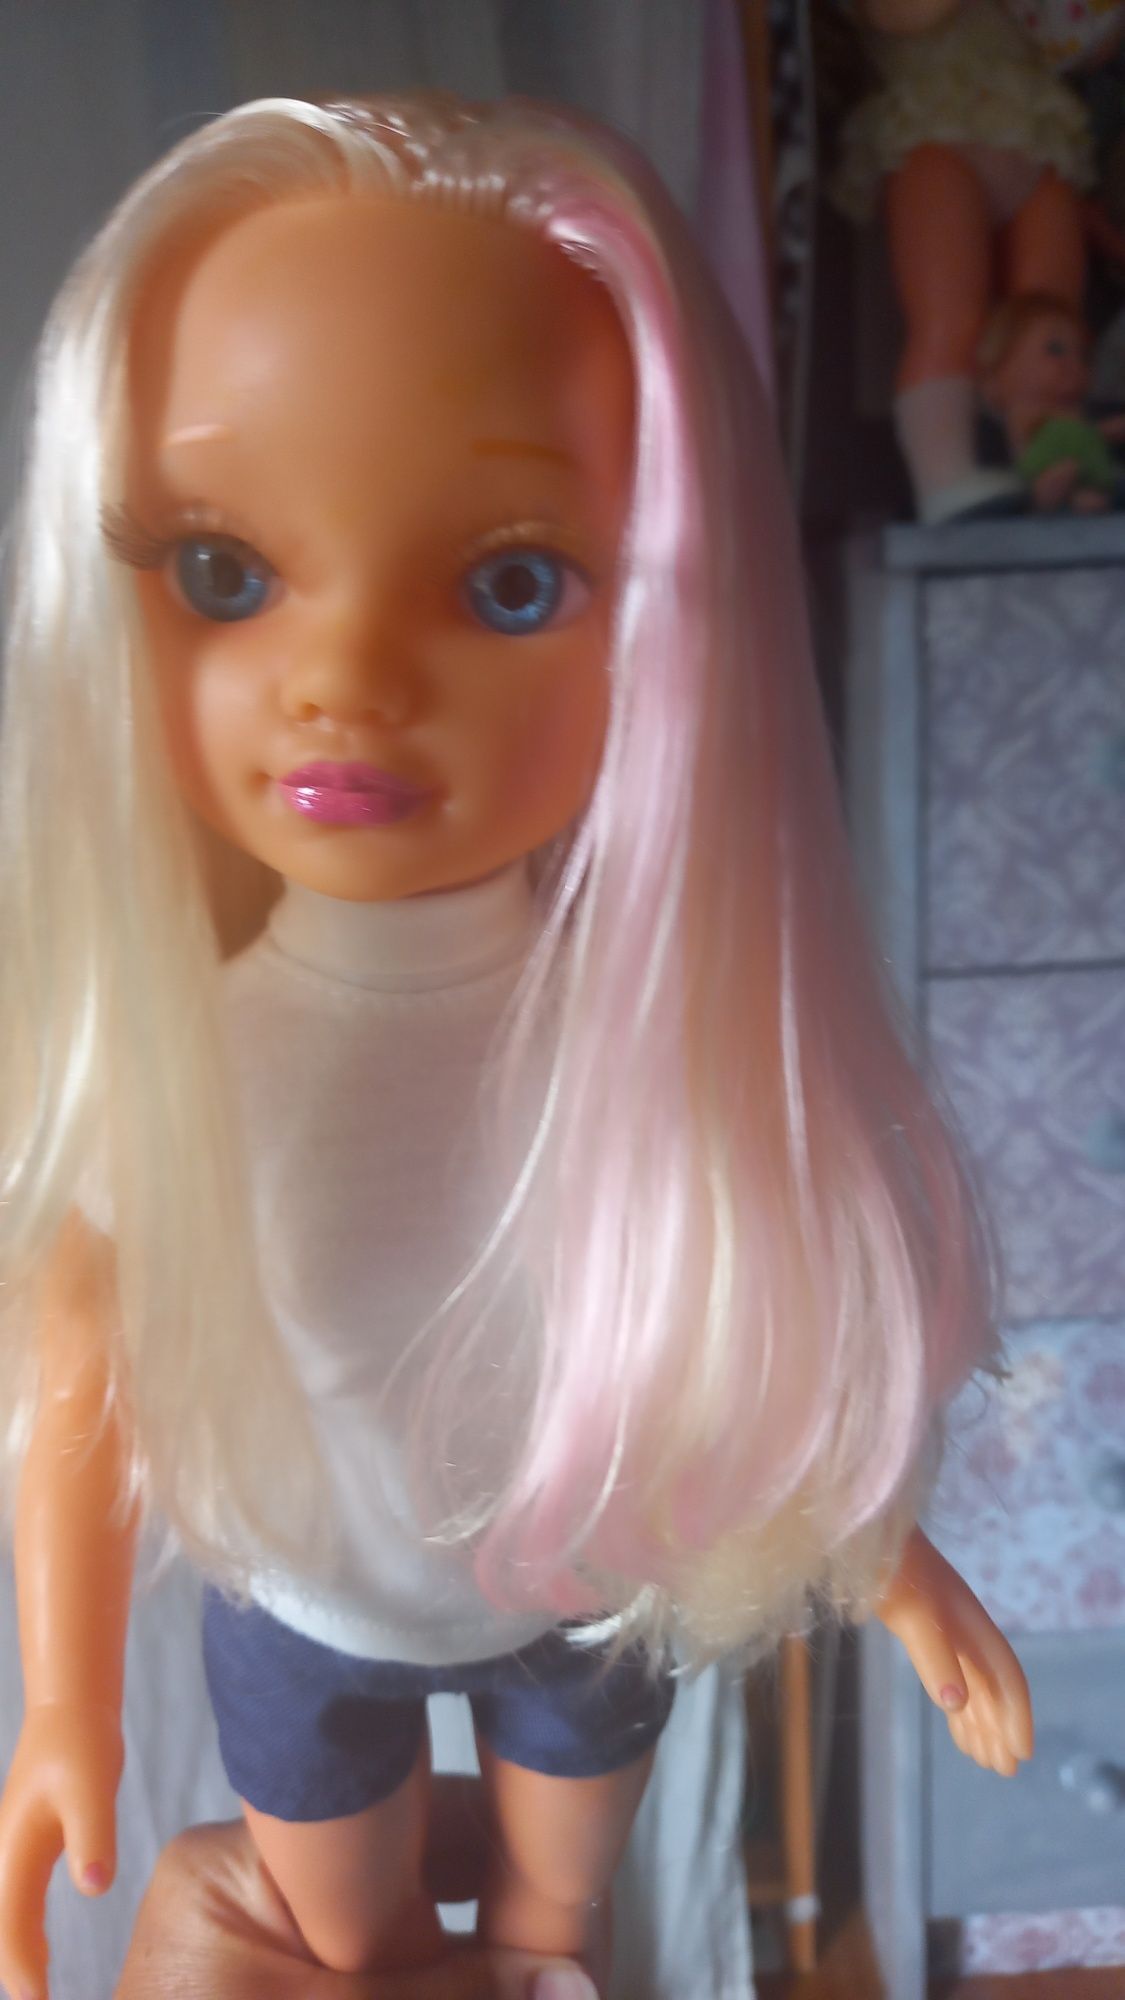 Boneca Nancy Famosa de 2013.
42 cm
Limpa e cuidada.
Portes não inclu